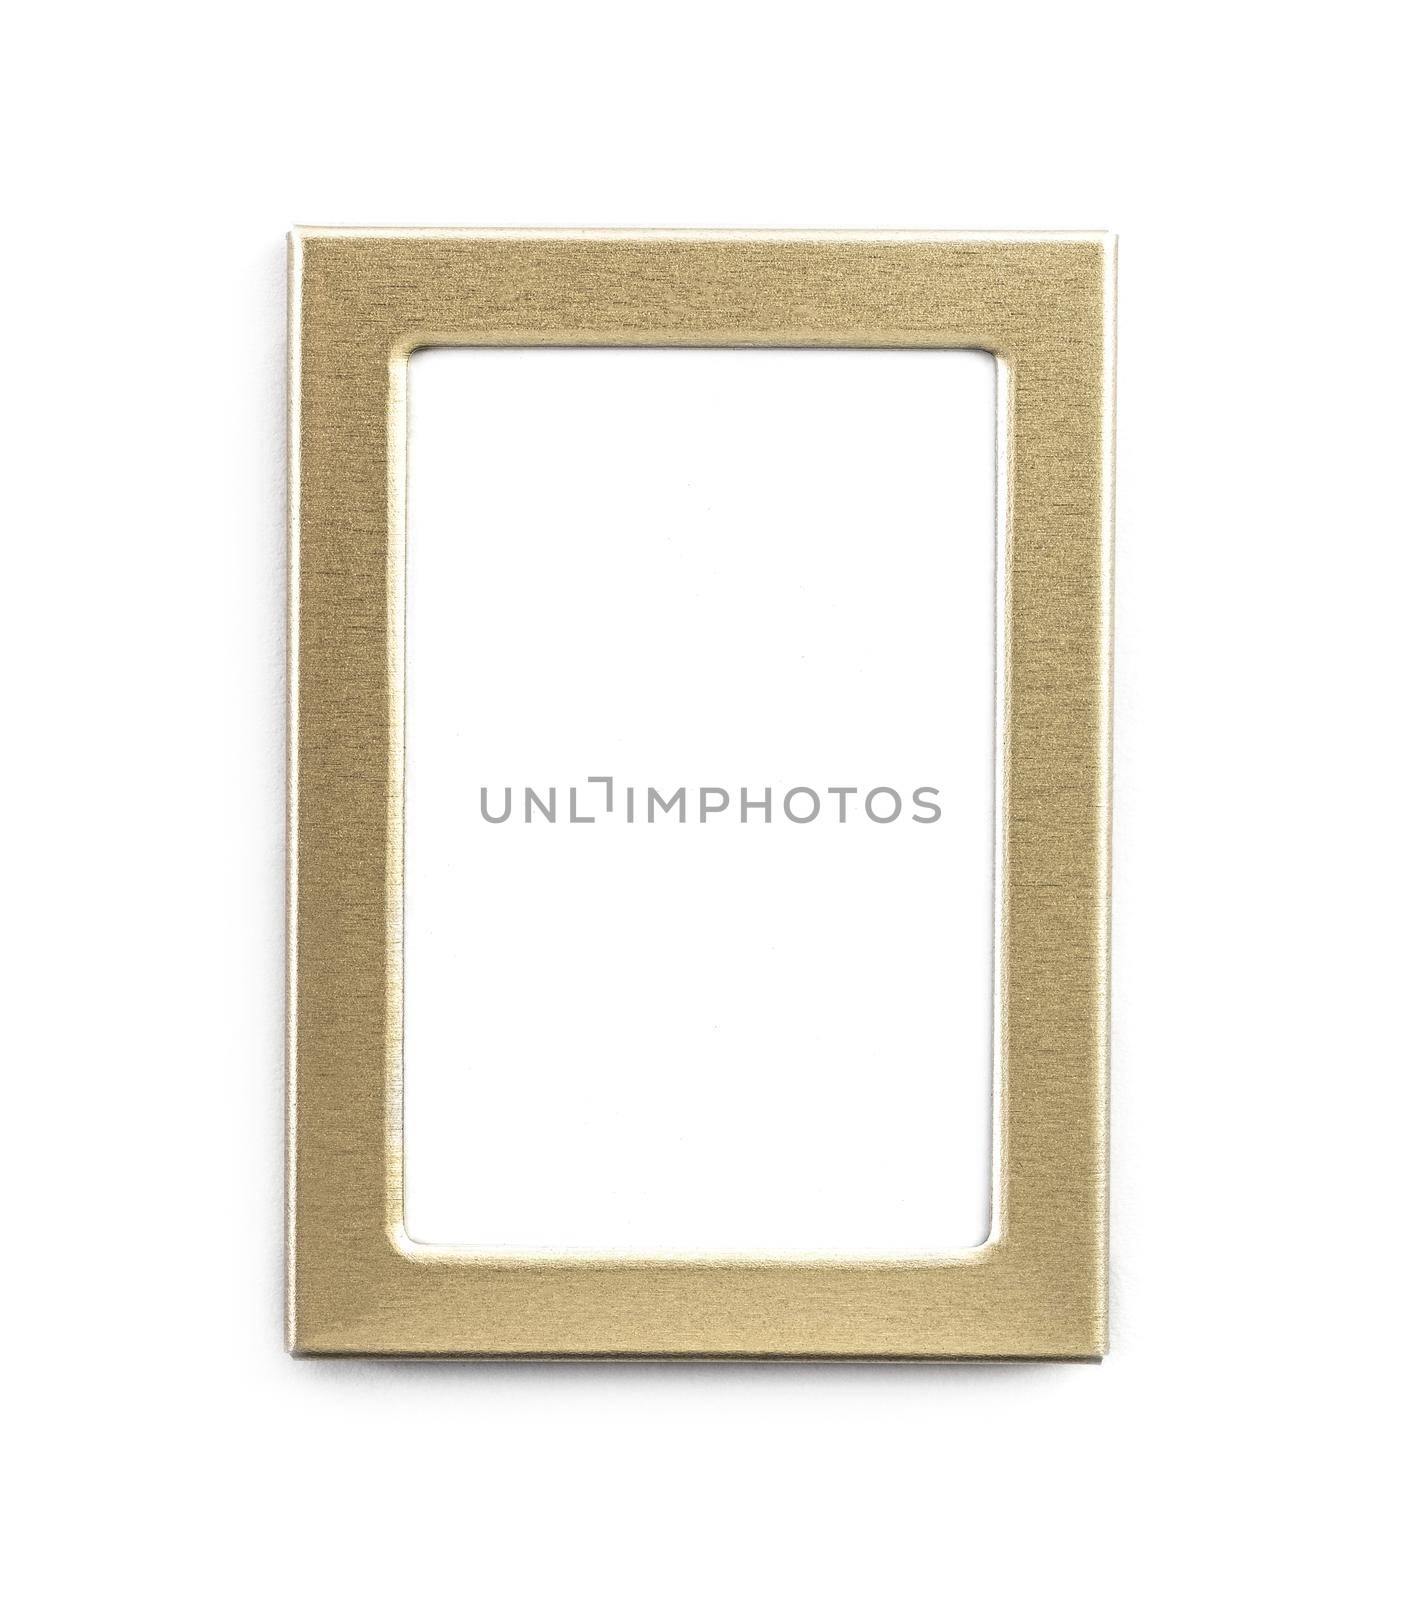 Empty gold rectanglular frame isolated on white background